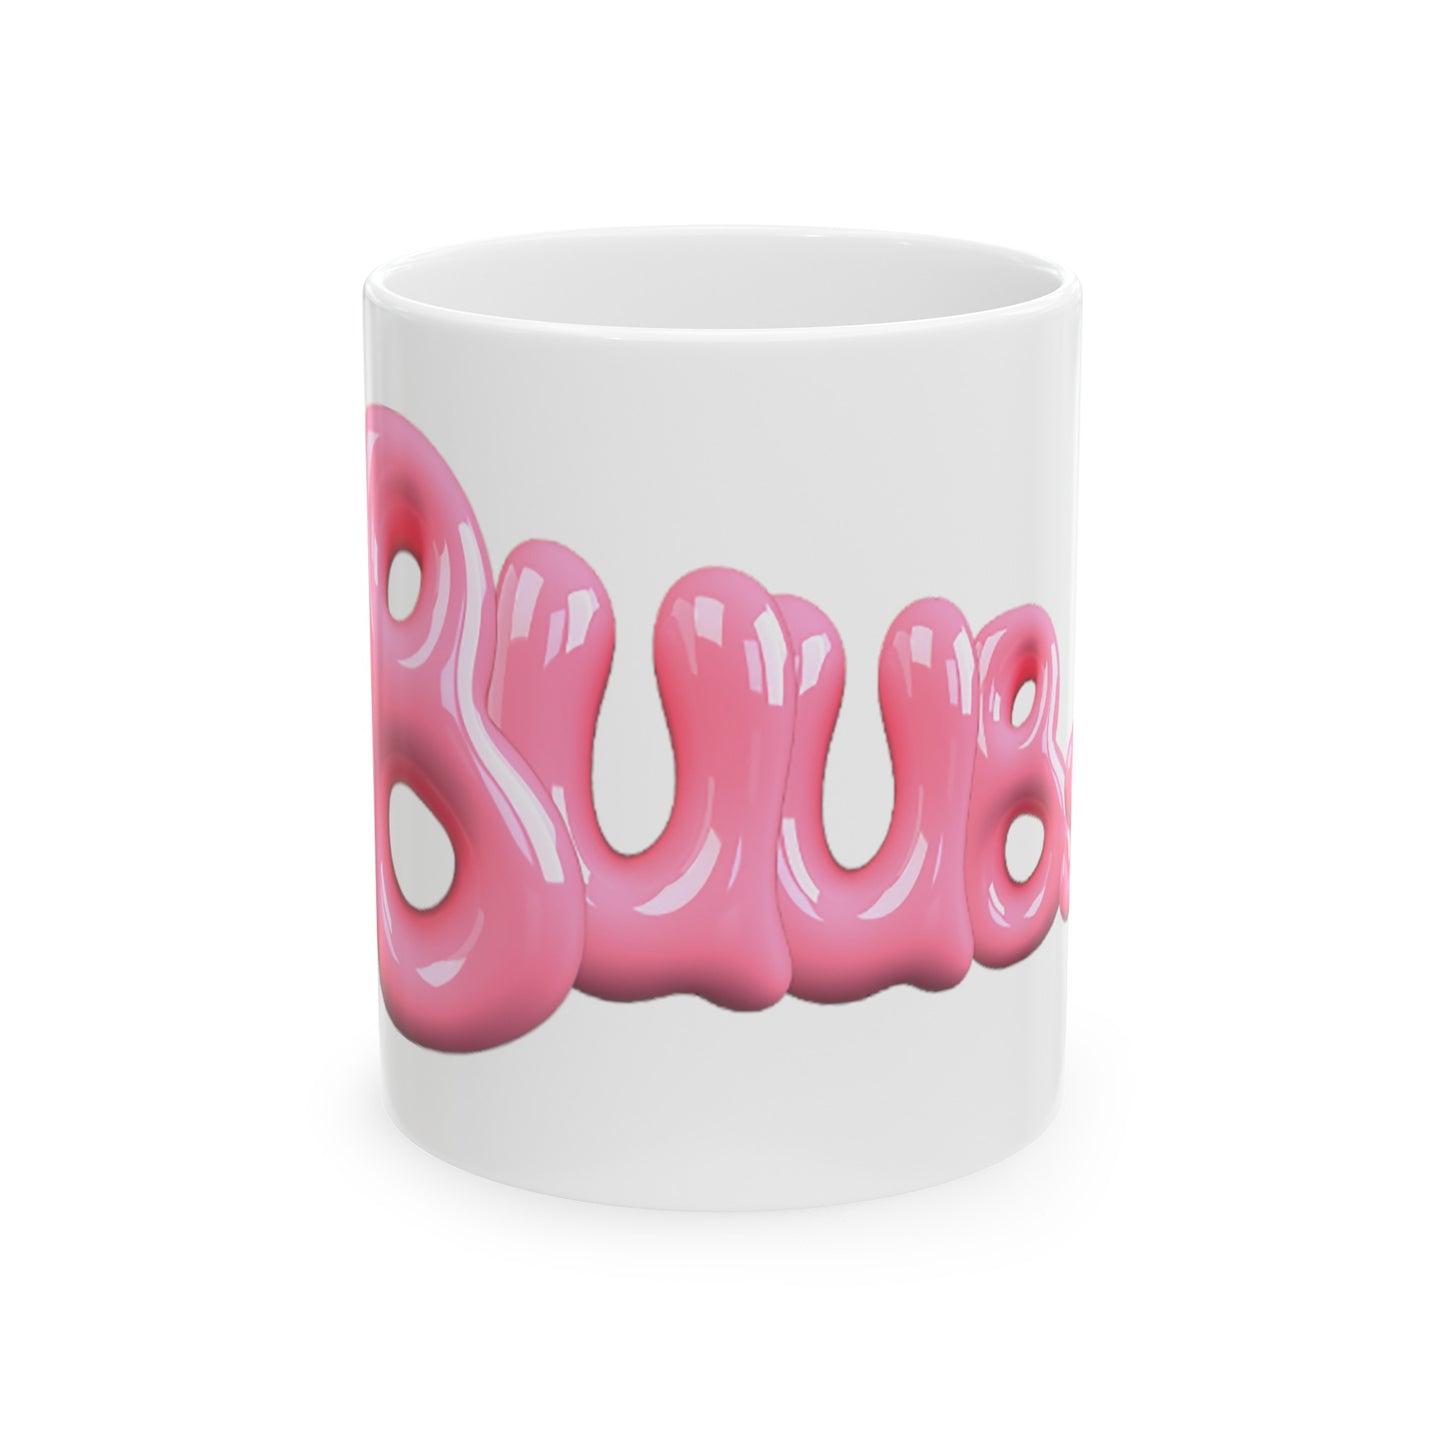 Juucie | "Buubs" Ceramic Mug, (11oz, 15oz) - Juucie